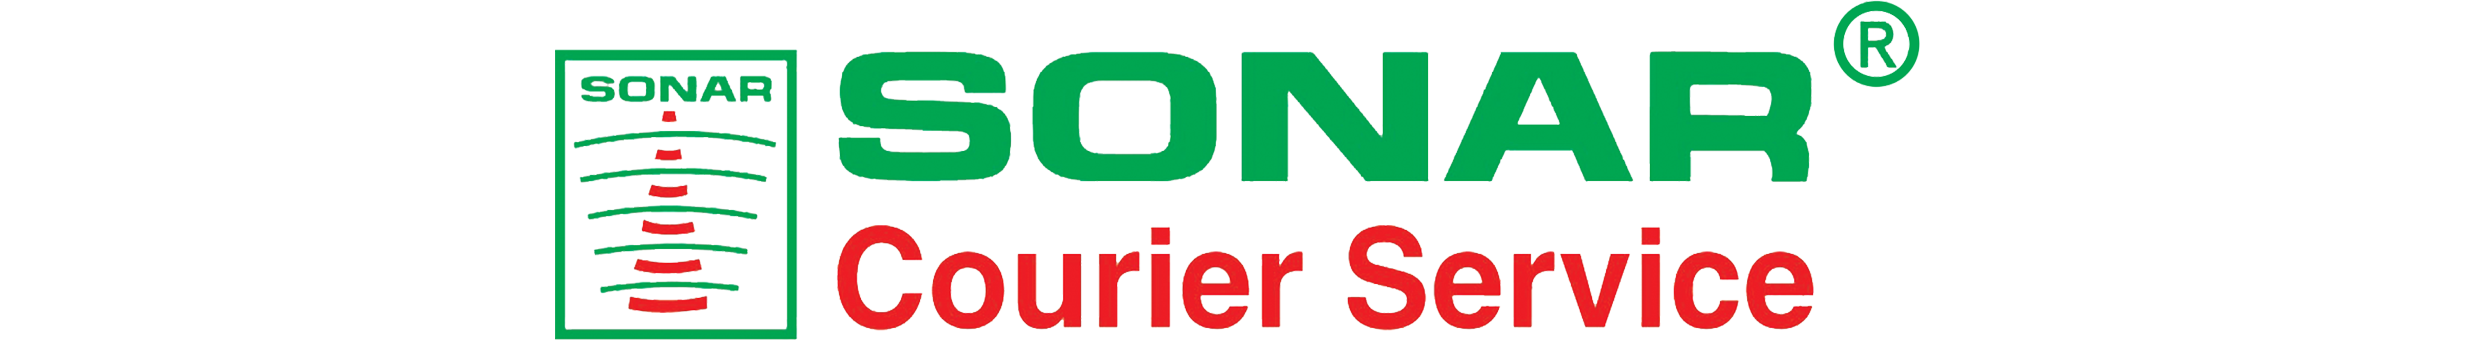 Sonar Courier Service Ltd.